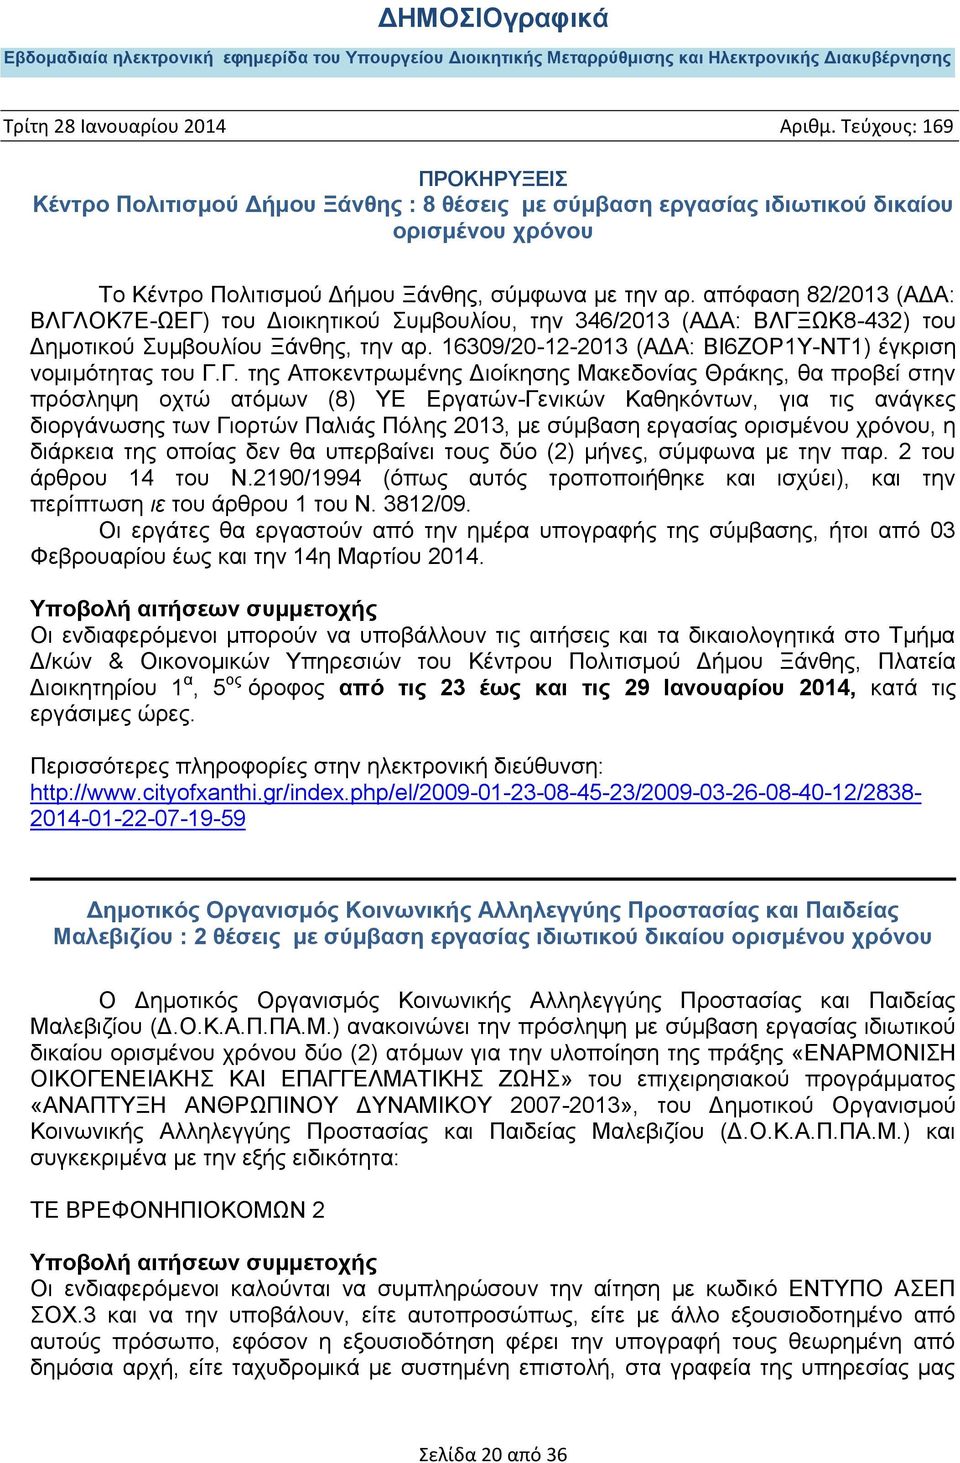 Γ. της Αποκεντρωμένης Διοίκησης Μακεδονίας Θράκης, θα προβεί στην πρόσληψη οχτώ ατόμων (8) ΥΕ Εργατών-Γενικών Καθηκόντων, για τις ανάγκες διοργάνωσης των Γιορτών Παλιάς Πόλης 2013, με σύμβαση